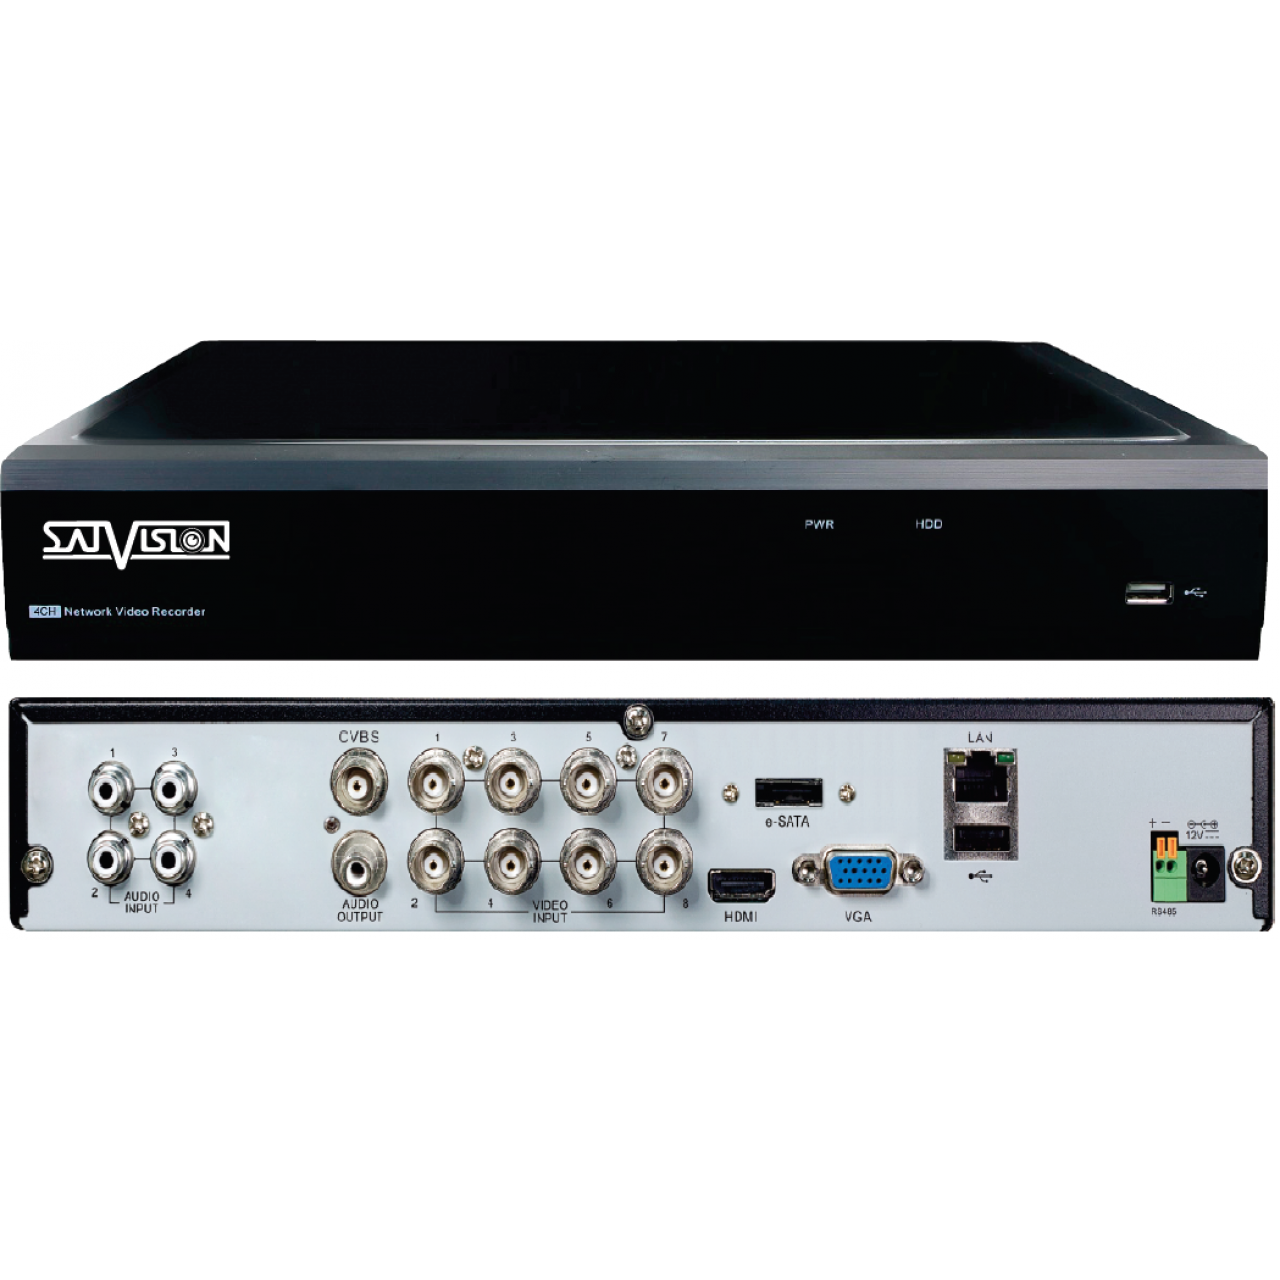 Гибридный 8-х канальный видеорегистратор SVR-8115P v3.0